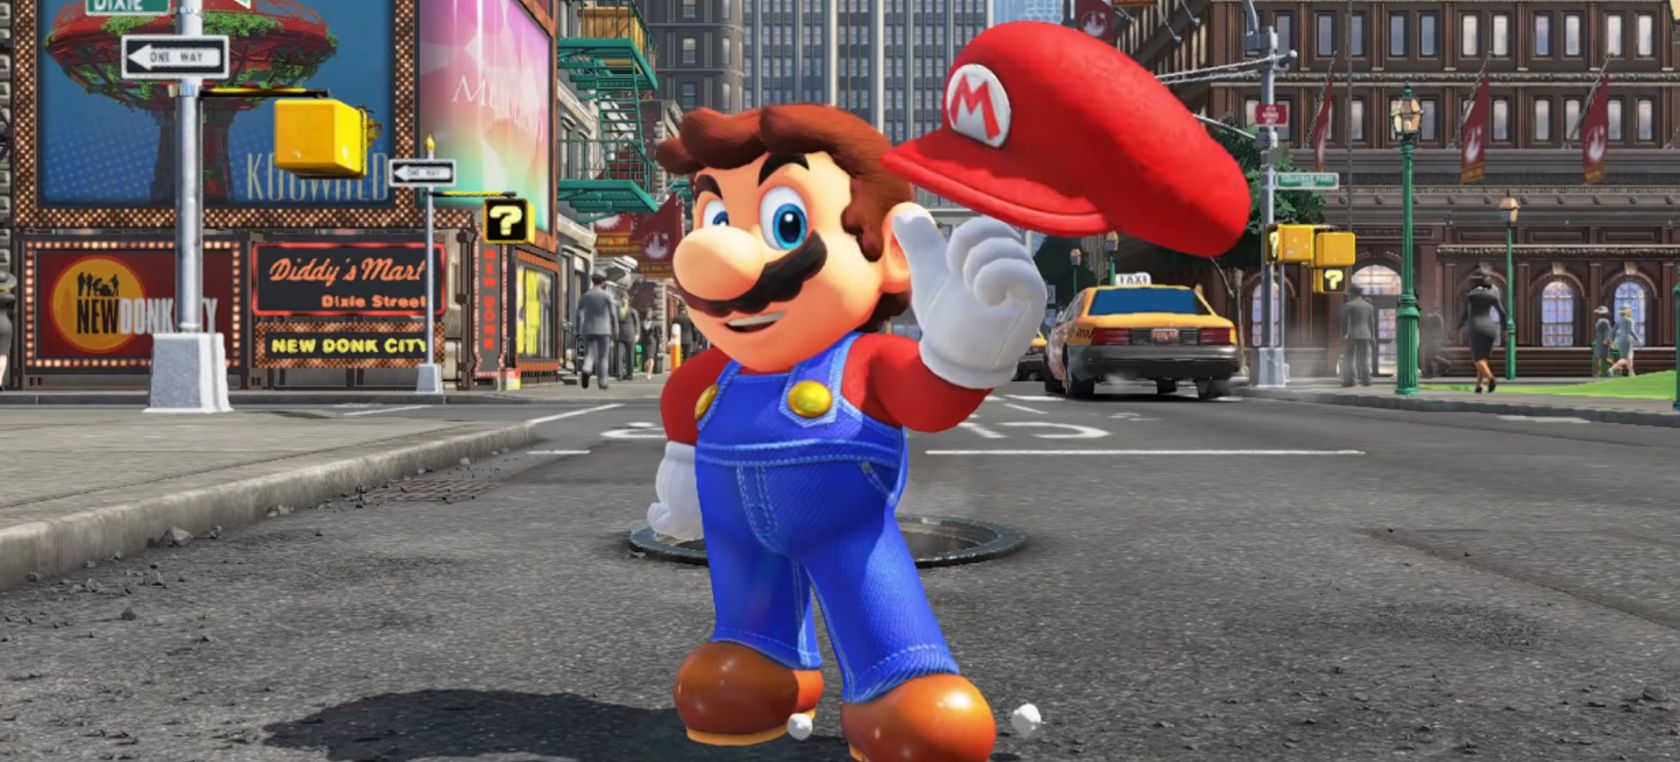 La película de ‘Super Mario Bros’ se retrasa hasta 2023